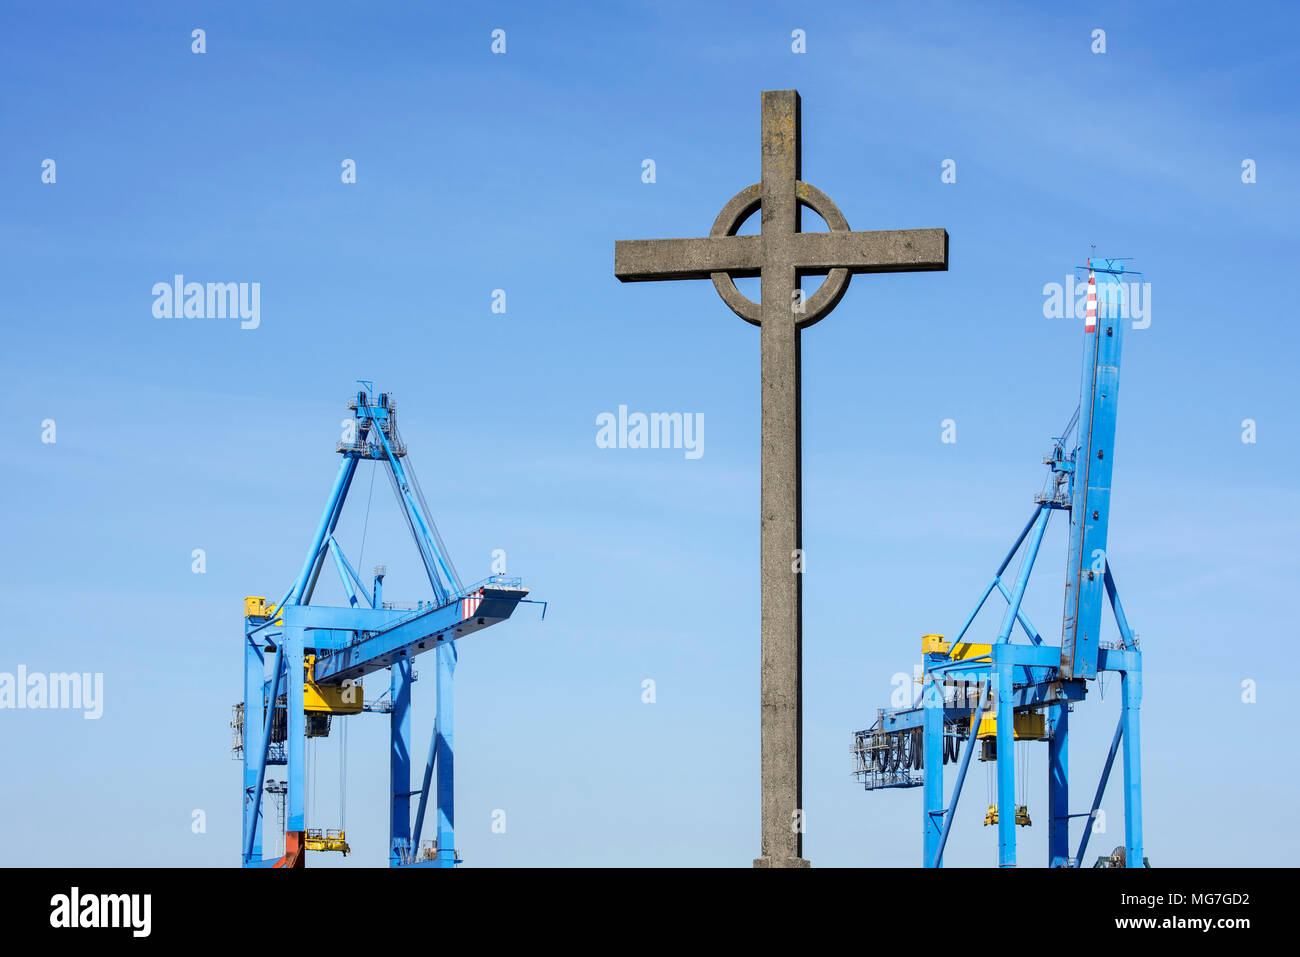 Visserskruis / Fishermen's Cross et grues d'un terminal à conteneurs dans le port de Zeebrugge, Anvers, Belgique Banque D'Images